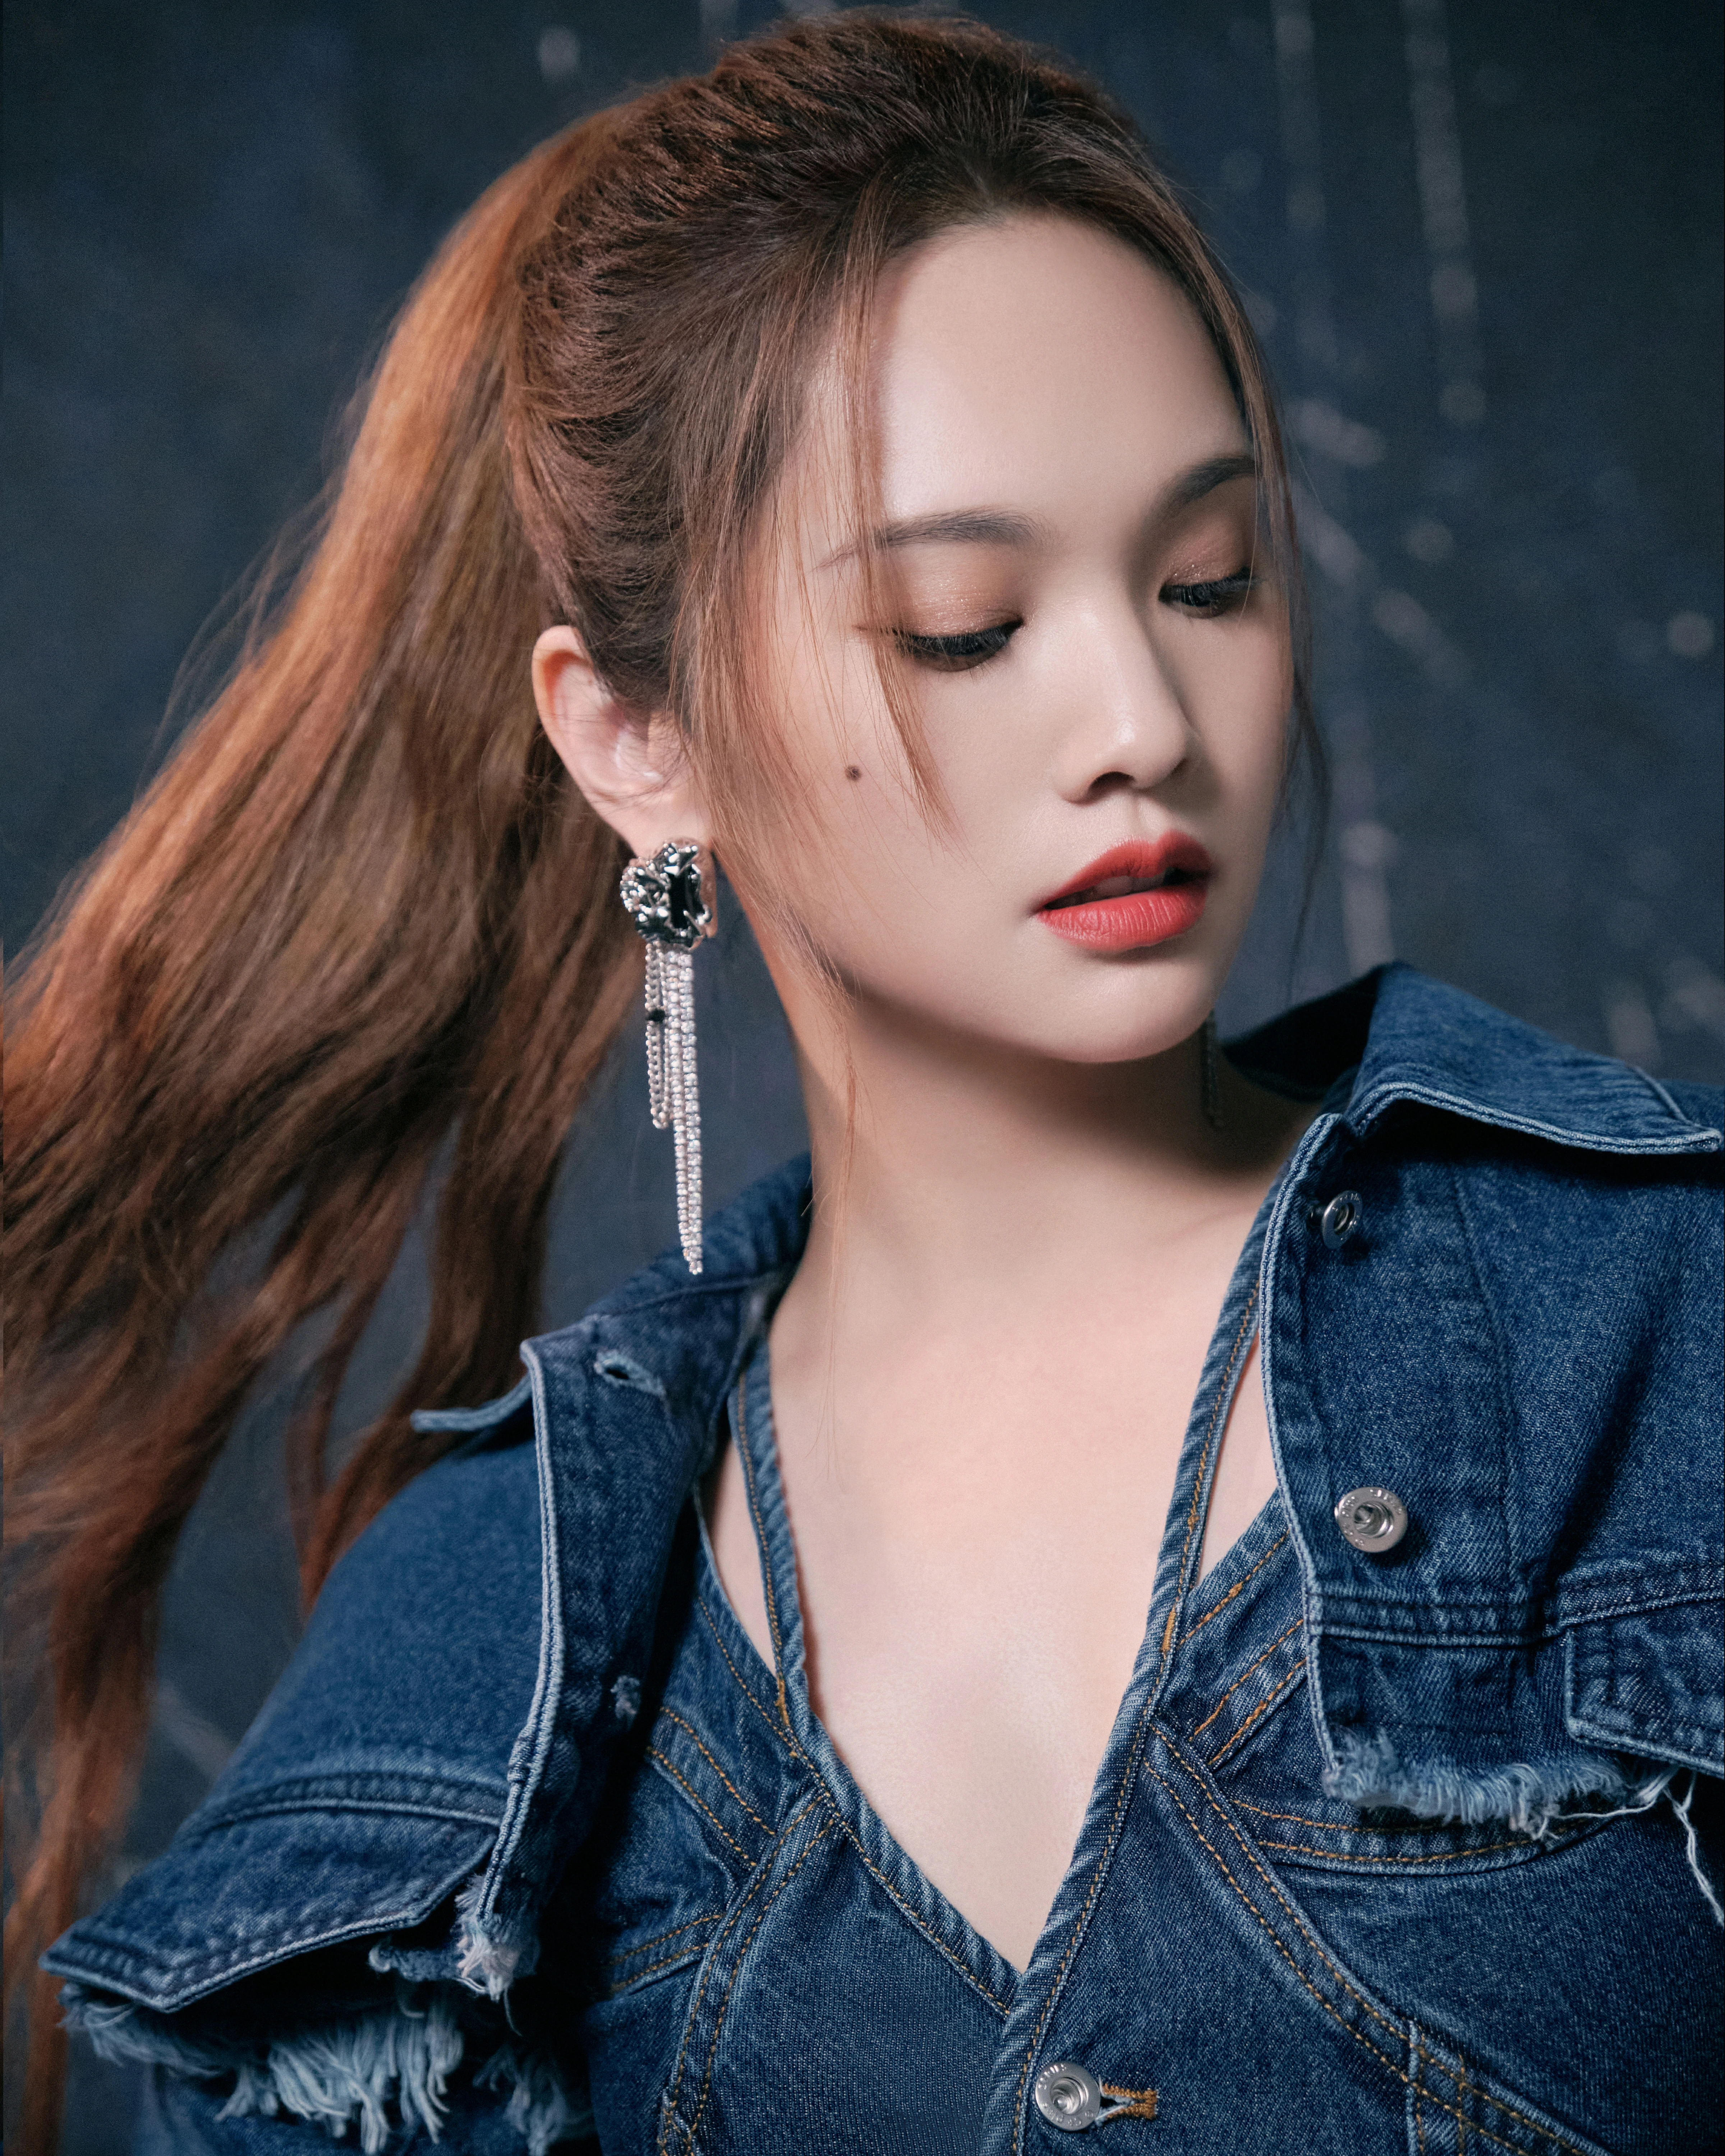 杨丞琳发布《我们的歌》牛仔造型写真 发辫飞扬超美飒,9